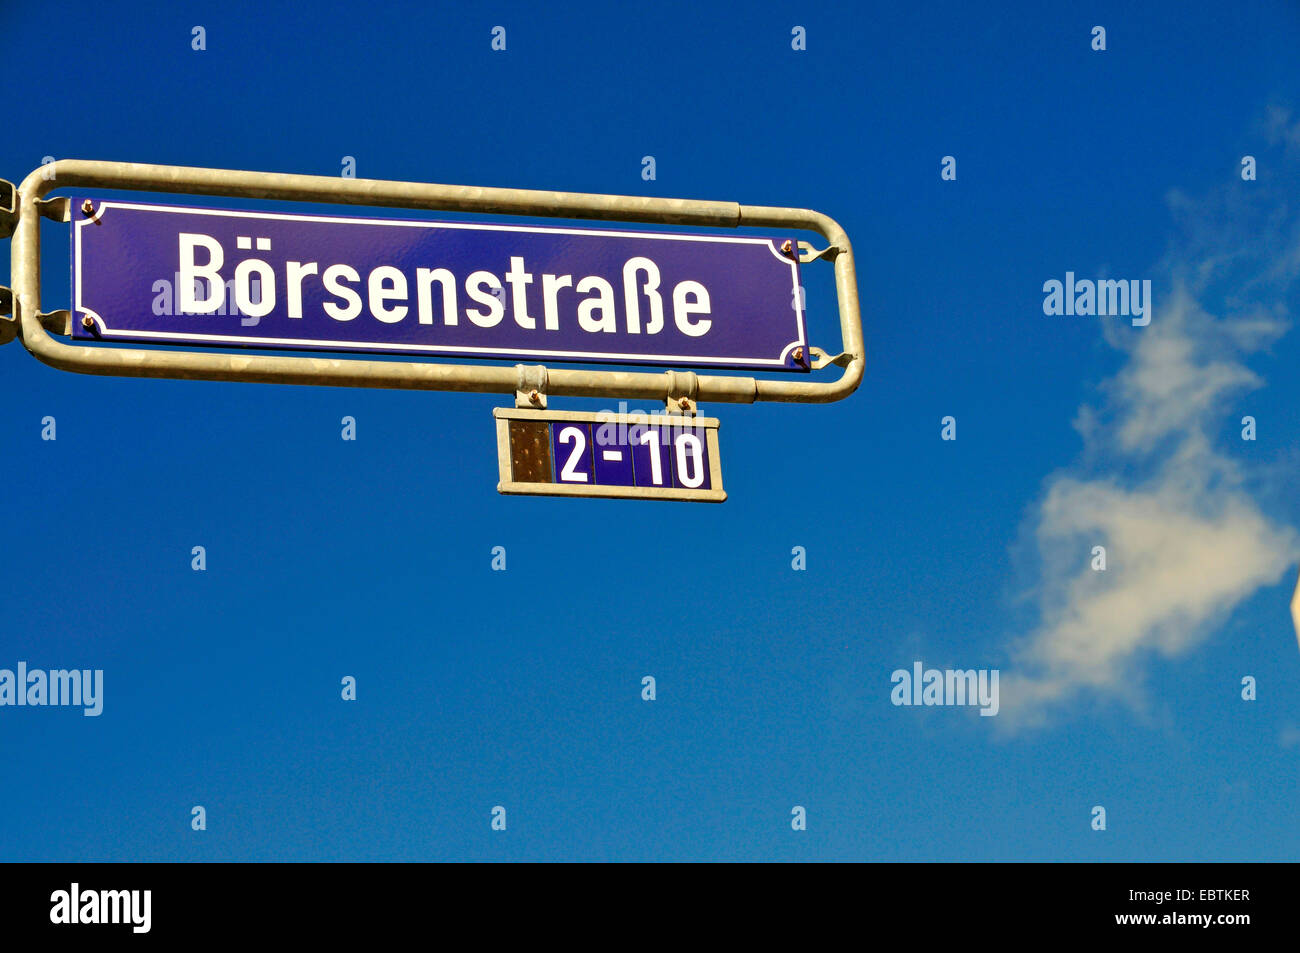 Placa de nombre Boersenstrasse 2-10, calle de la bolsa, en el distrito financiero de Frankfurt/Main, Alemania, Hesse, Frankfurt/Main Foto de stock